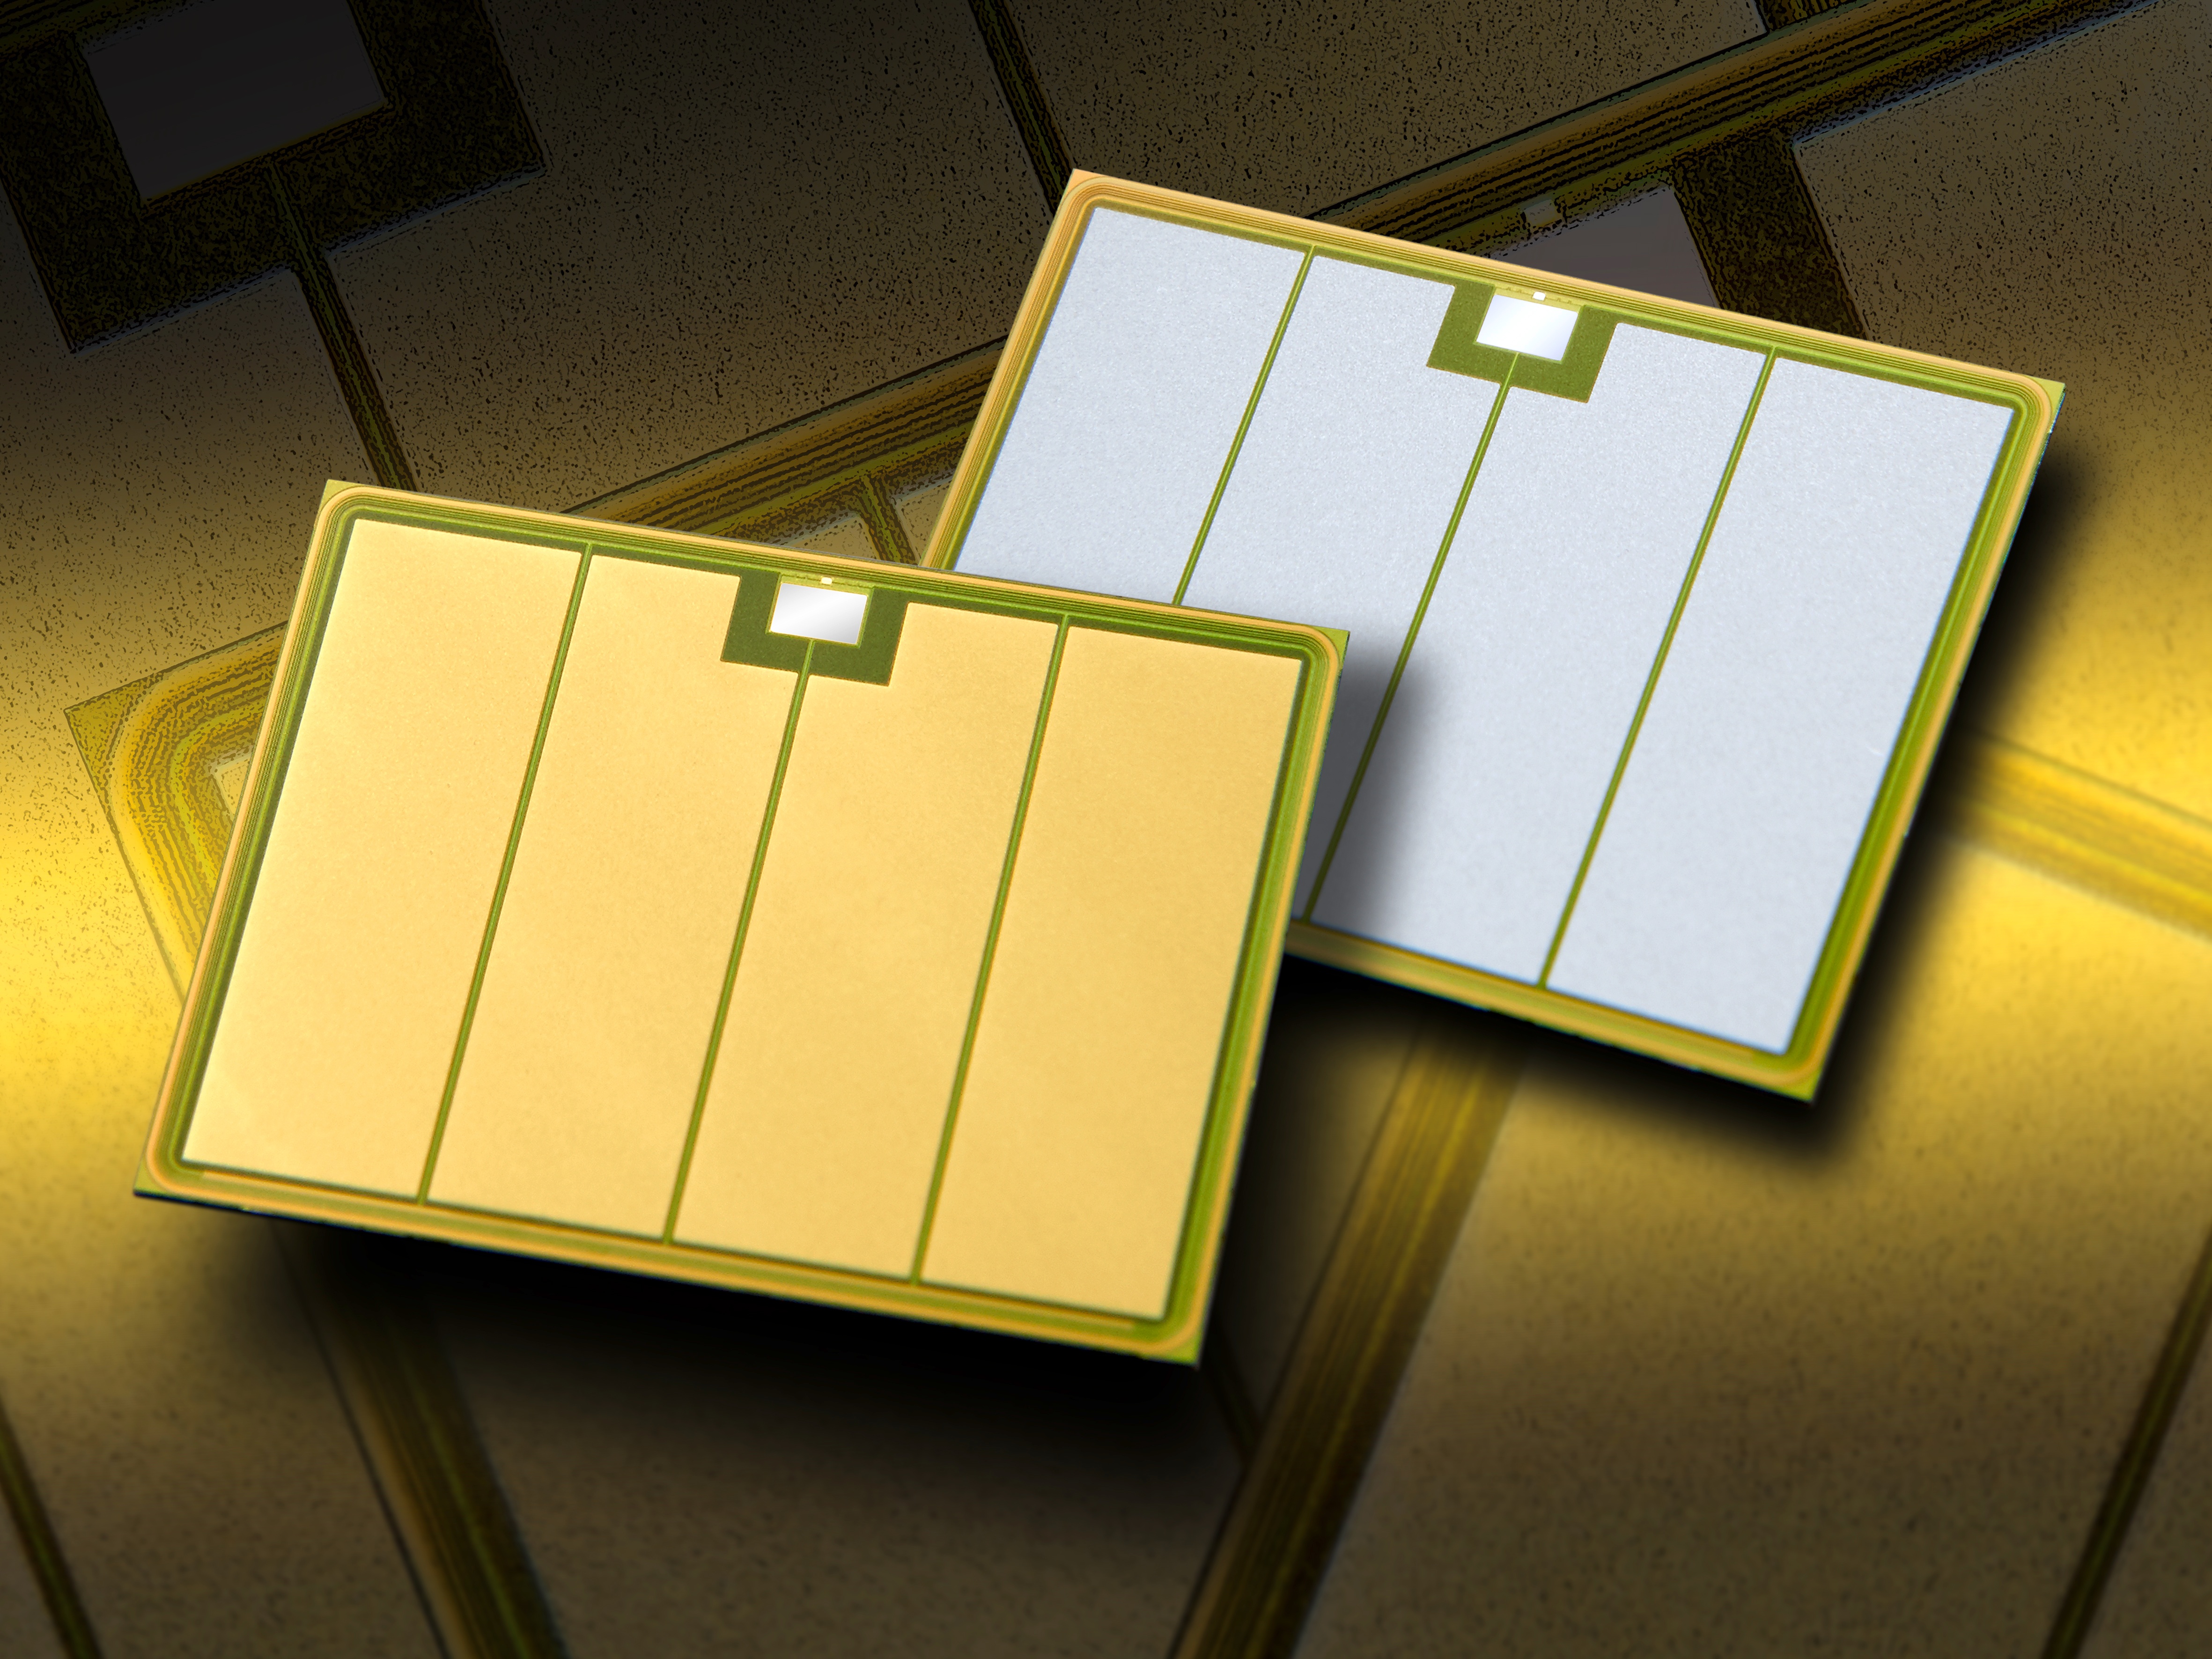 Fraunhofer ISIT entwickelt für das Projekt die IGBT - Insulated Gate Bipolar Transistor